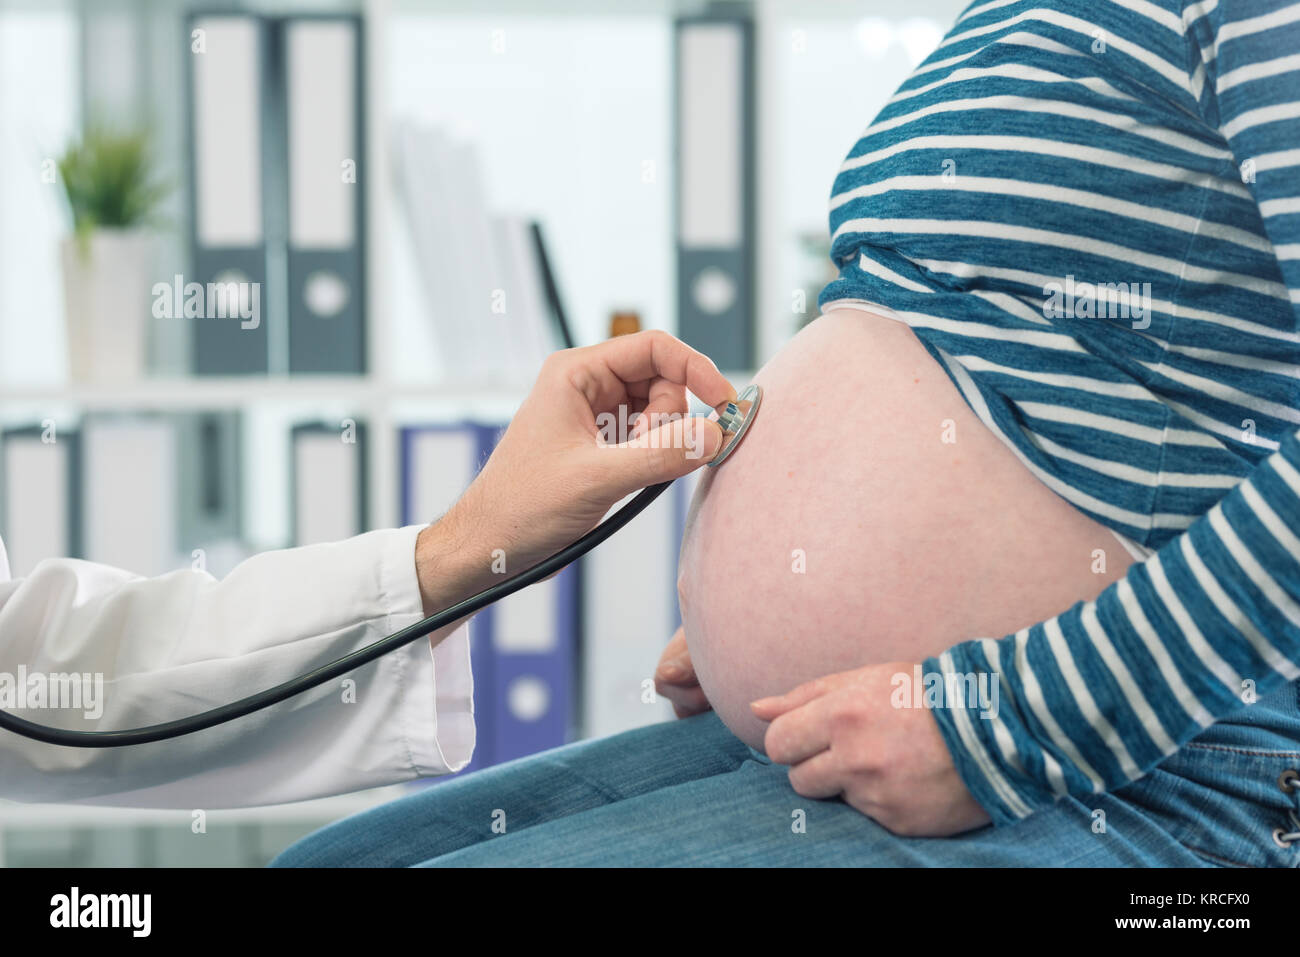 Esame medico donna incinta con stetoscopio. Assistenza sanitaria di controllo durante la gravidanza. Foto Stock